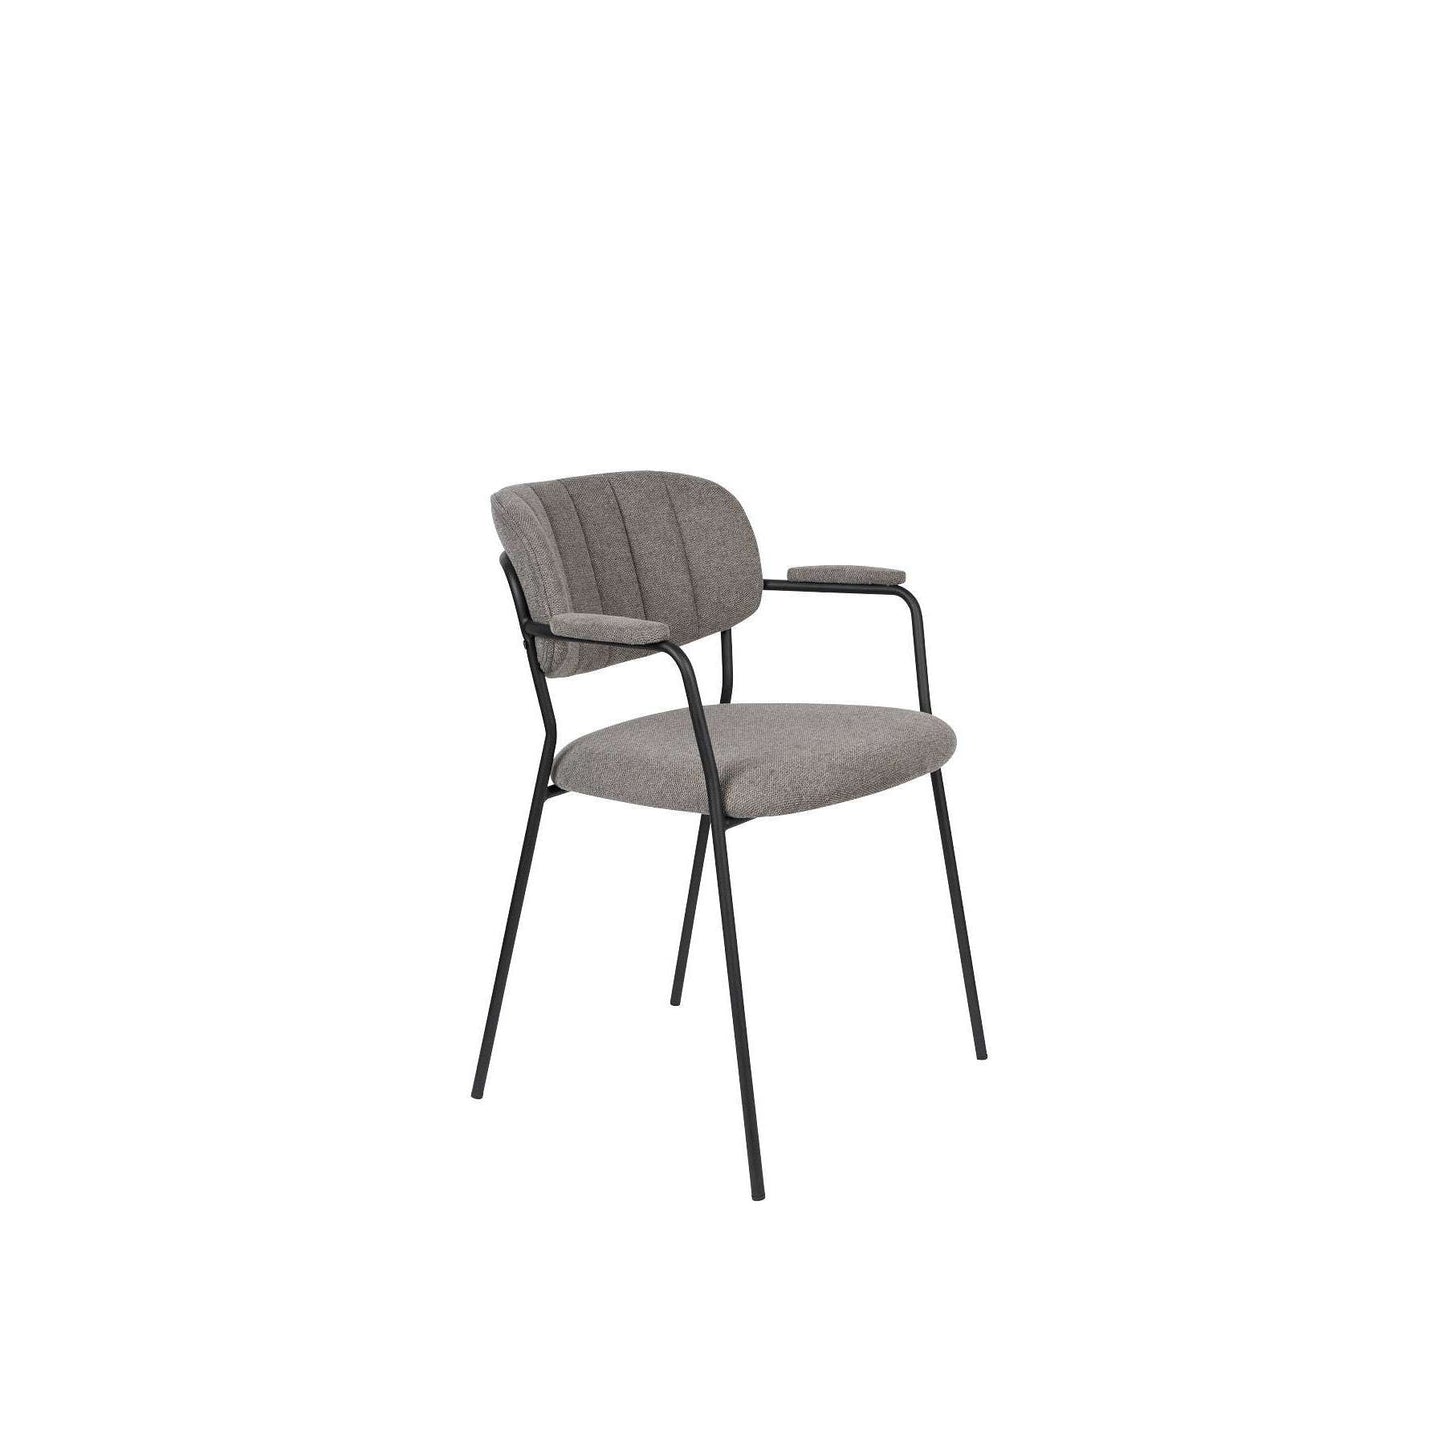 Staerkk stoel met armleuningen jolien zwart/grijs 56 x 60,5 x 78 cm